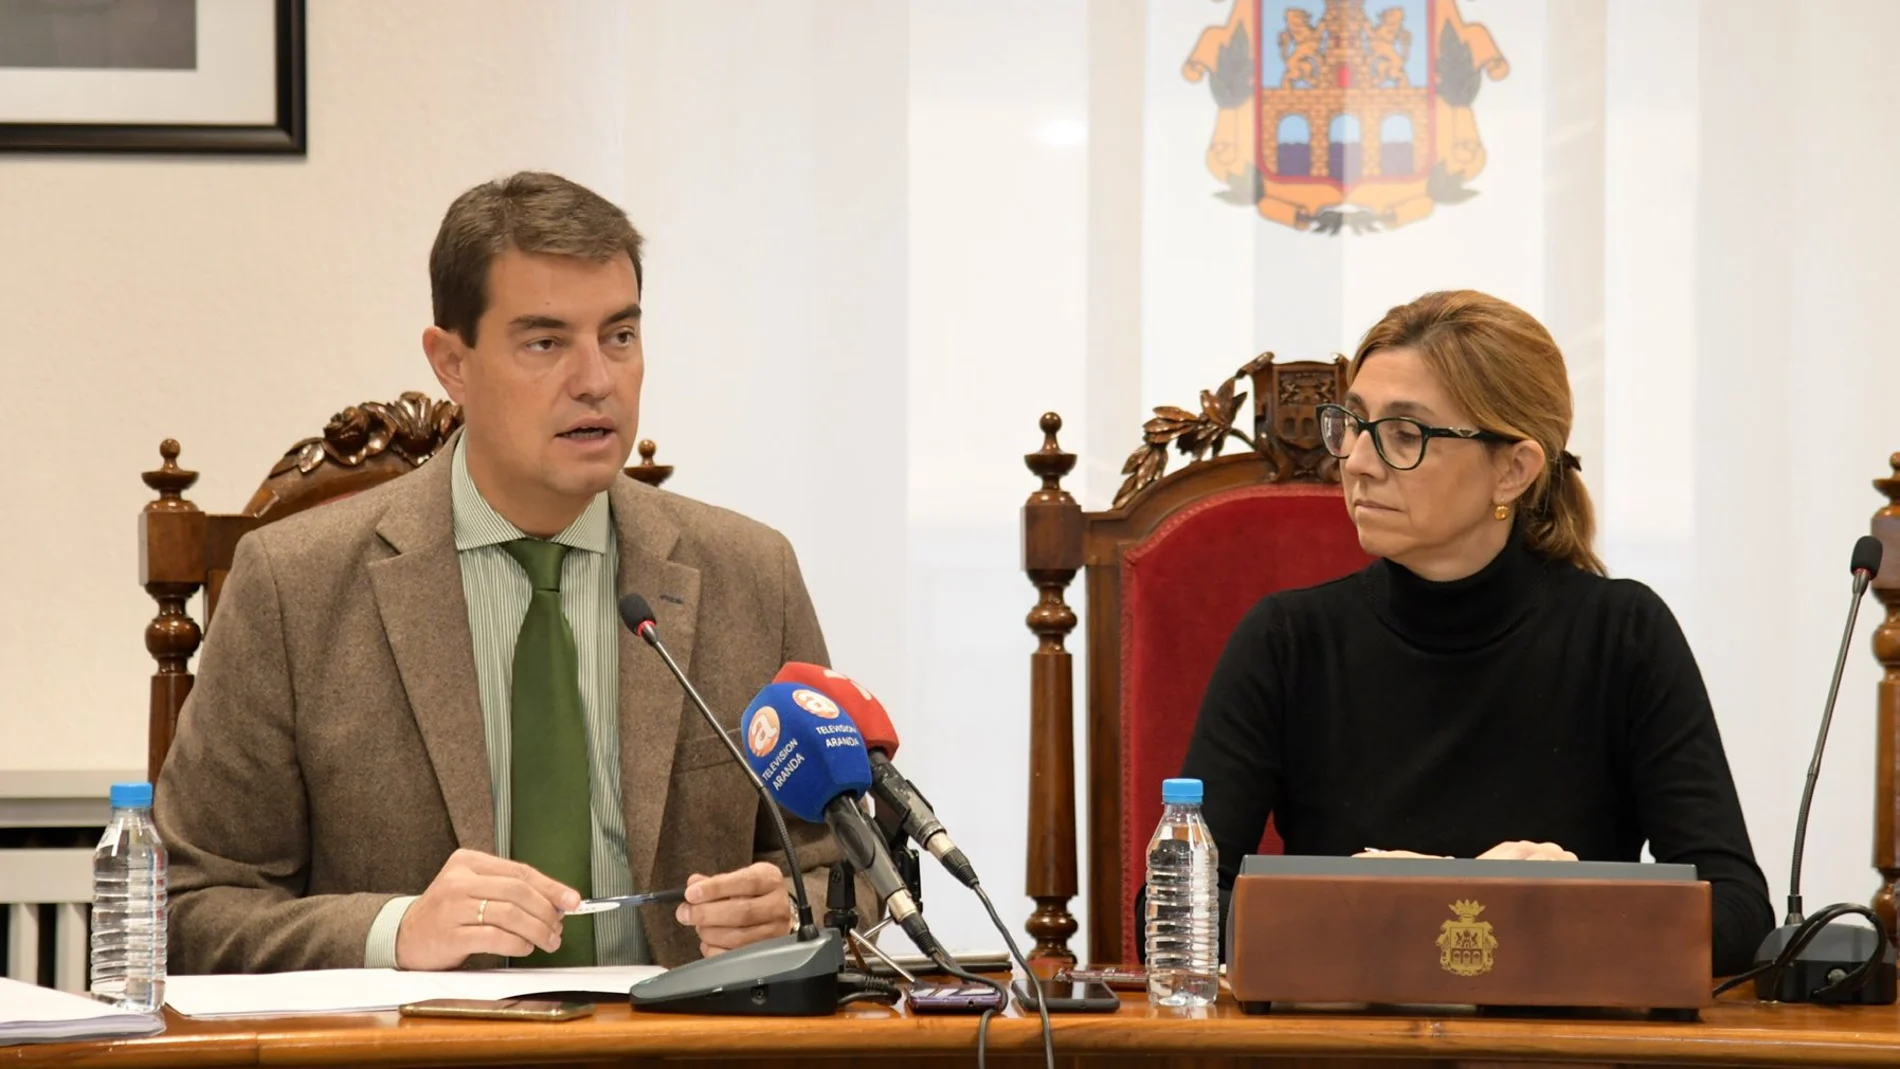 El consejero de la Presidencia, Ángel Ibáñez, presenta el XVI Congreso del Juego de Castilla y León en Aranda de Duero, junto a la alcaldesa, Raquel González